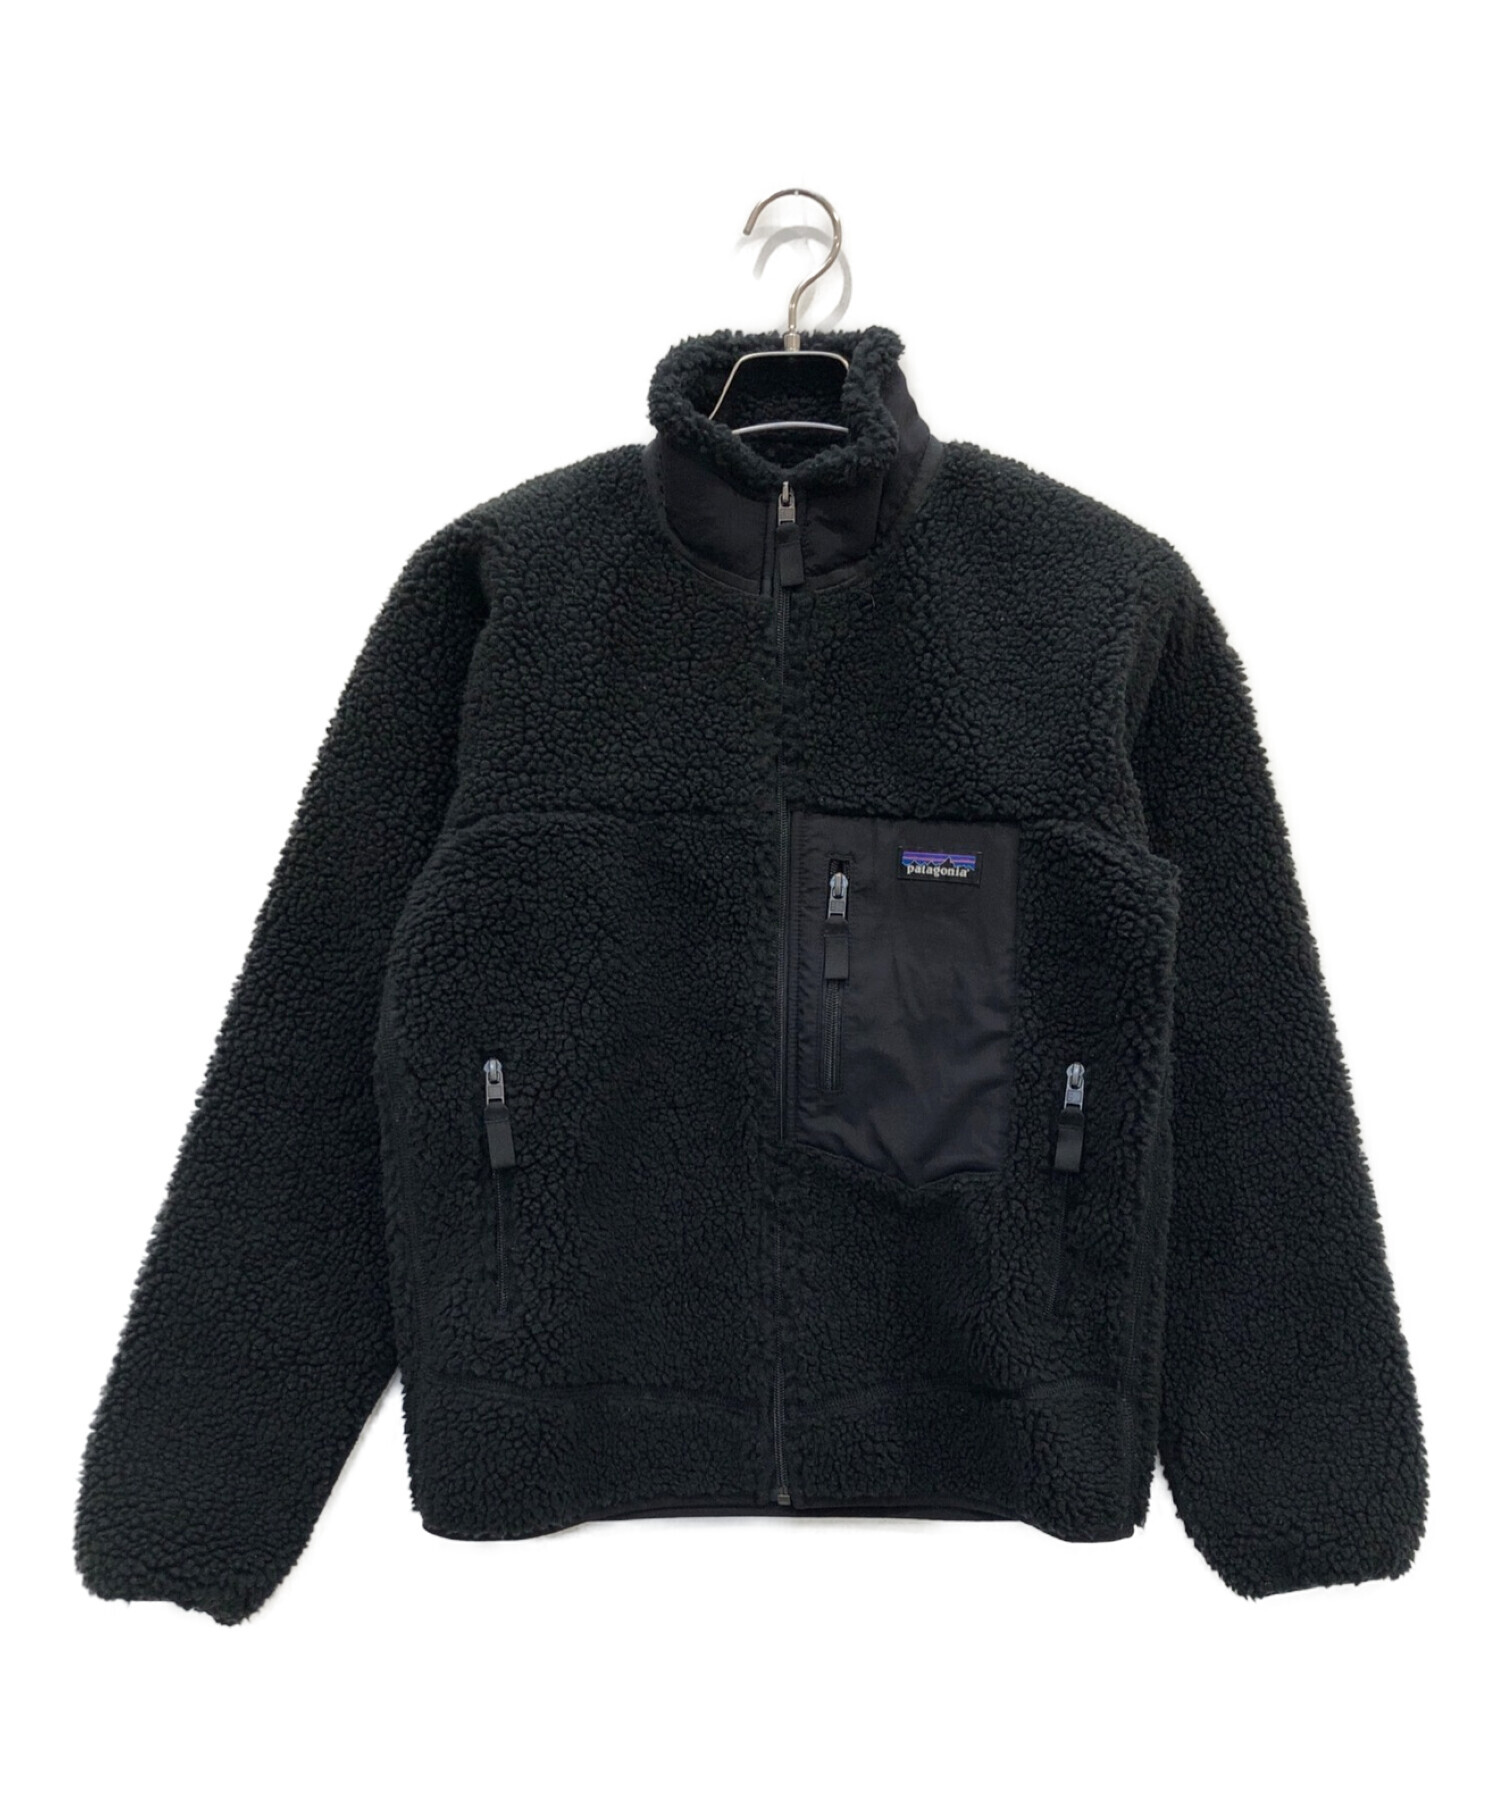 Patagonia (パタゴニア) Men's Classic Retro-x Jacket ブラック サイズ:XS 未使用品